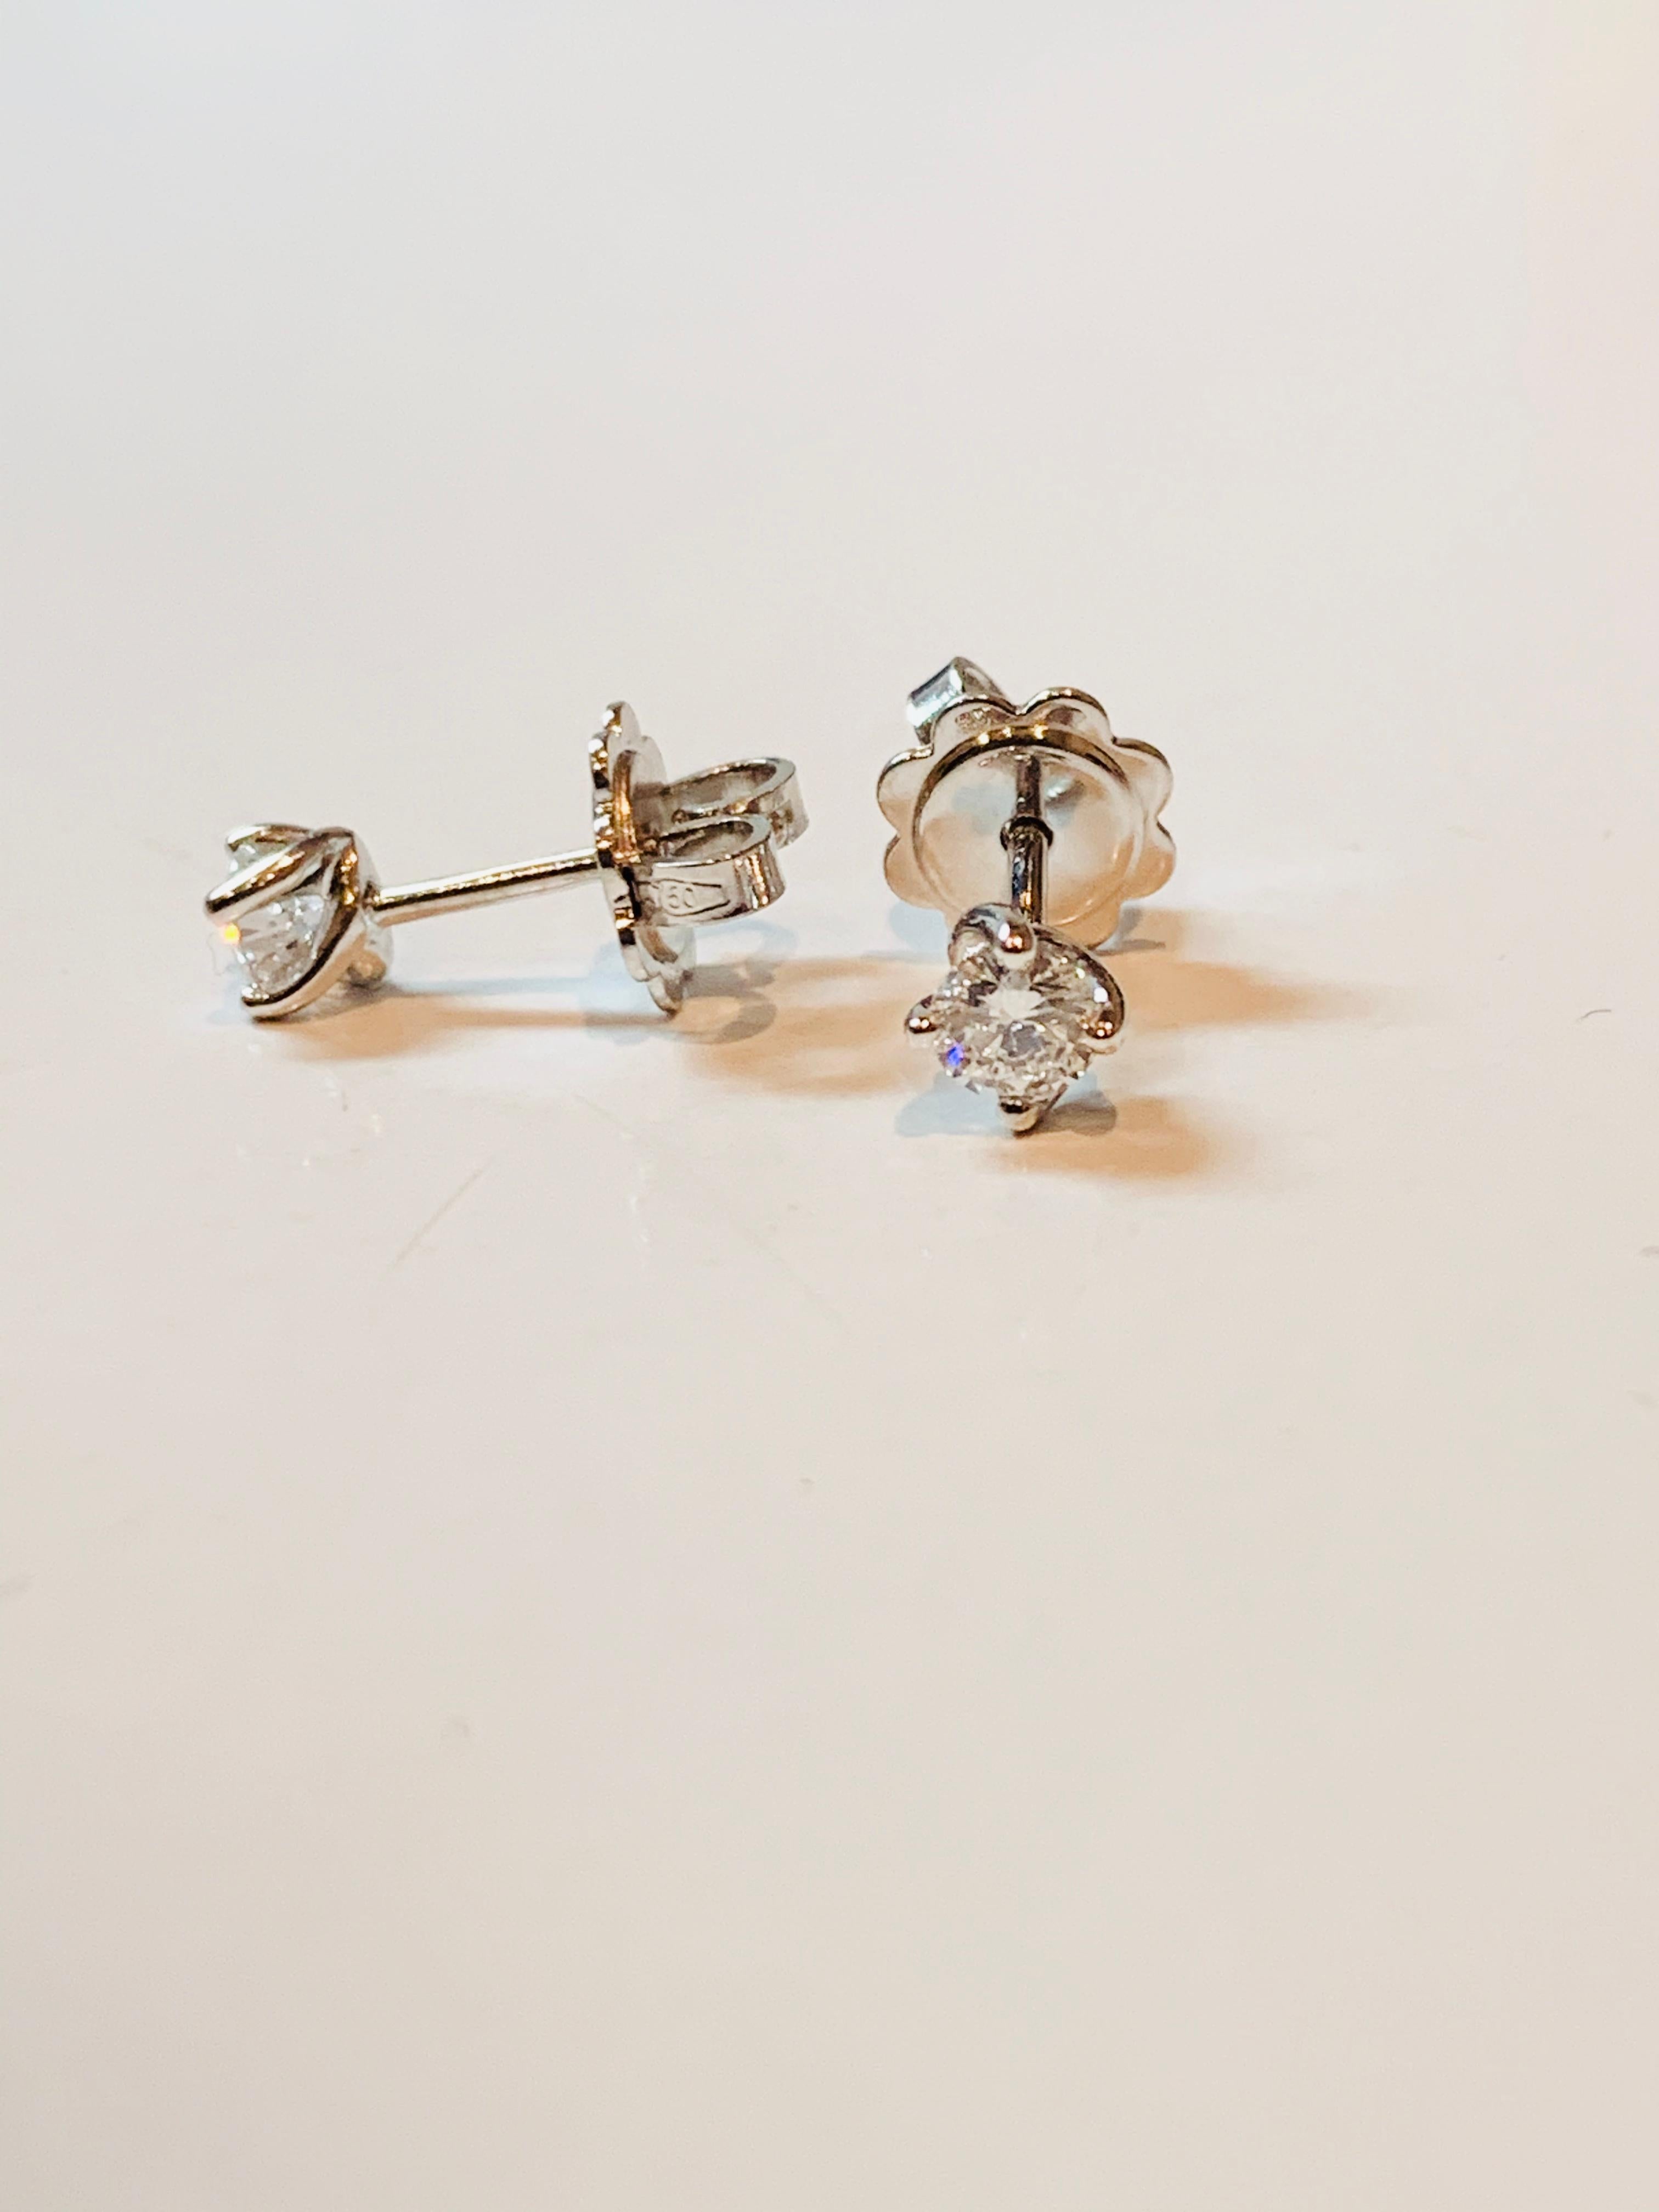 Round Cut HRD Certified 0.48 Carat Flower Diamonds Set in 18Kt White Gold Stud Earrings